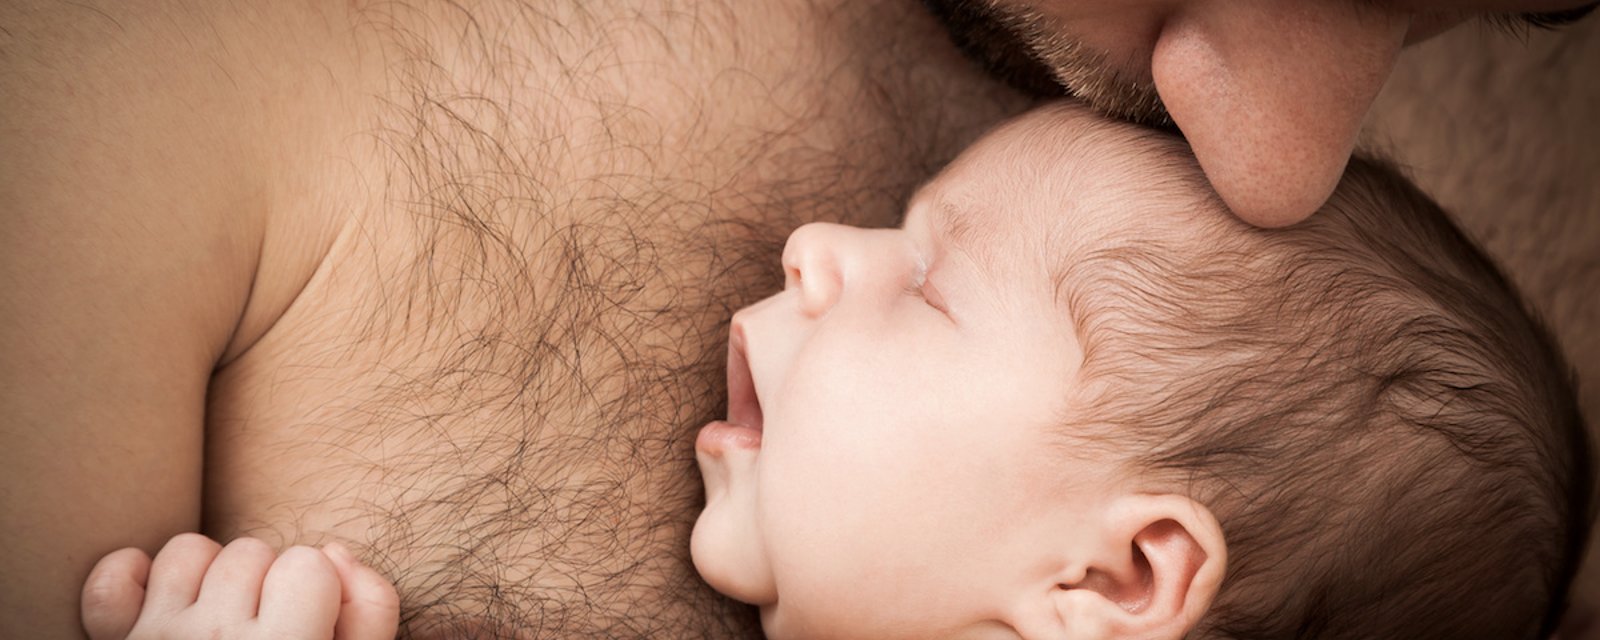 Selon la science l'accouchement peut changer aussi le corps et le cerveau du nouveau papa!